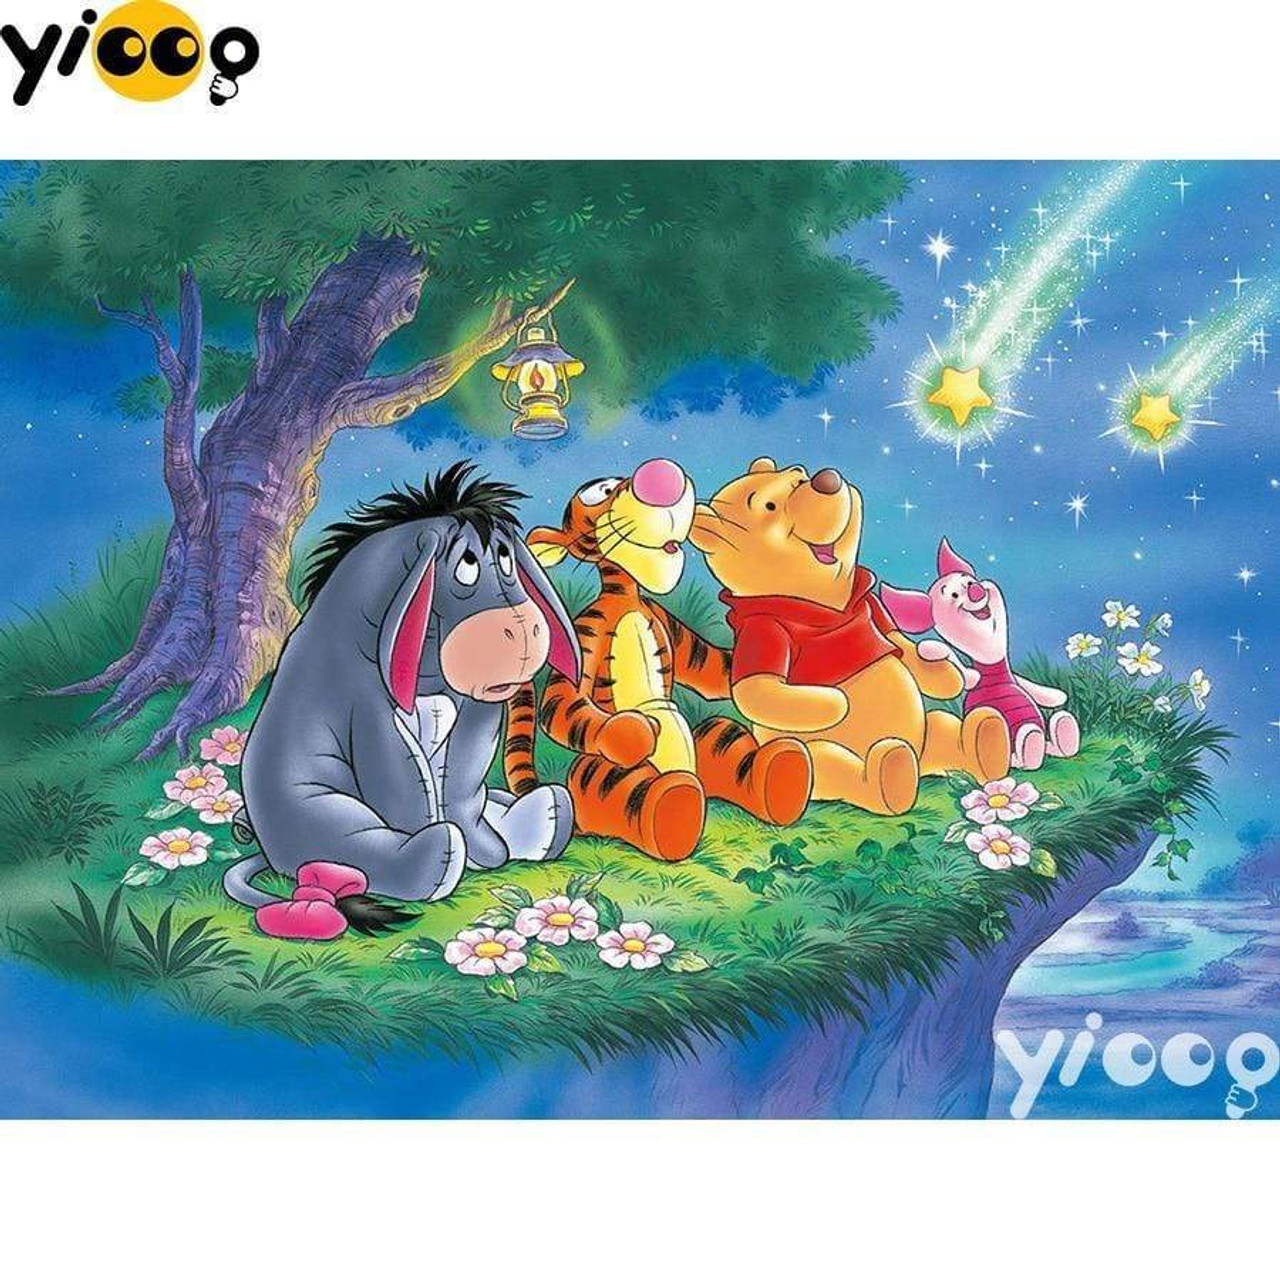 Winnie The Pooh Cartoon - Diamond Paintings 